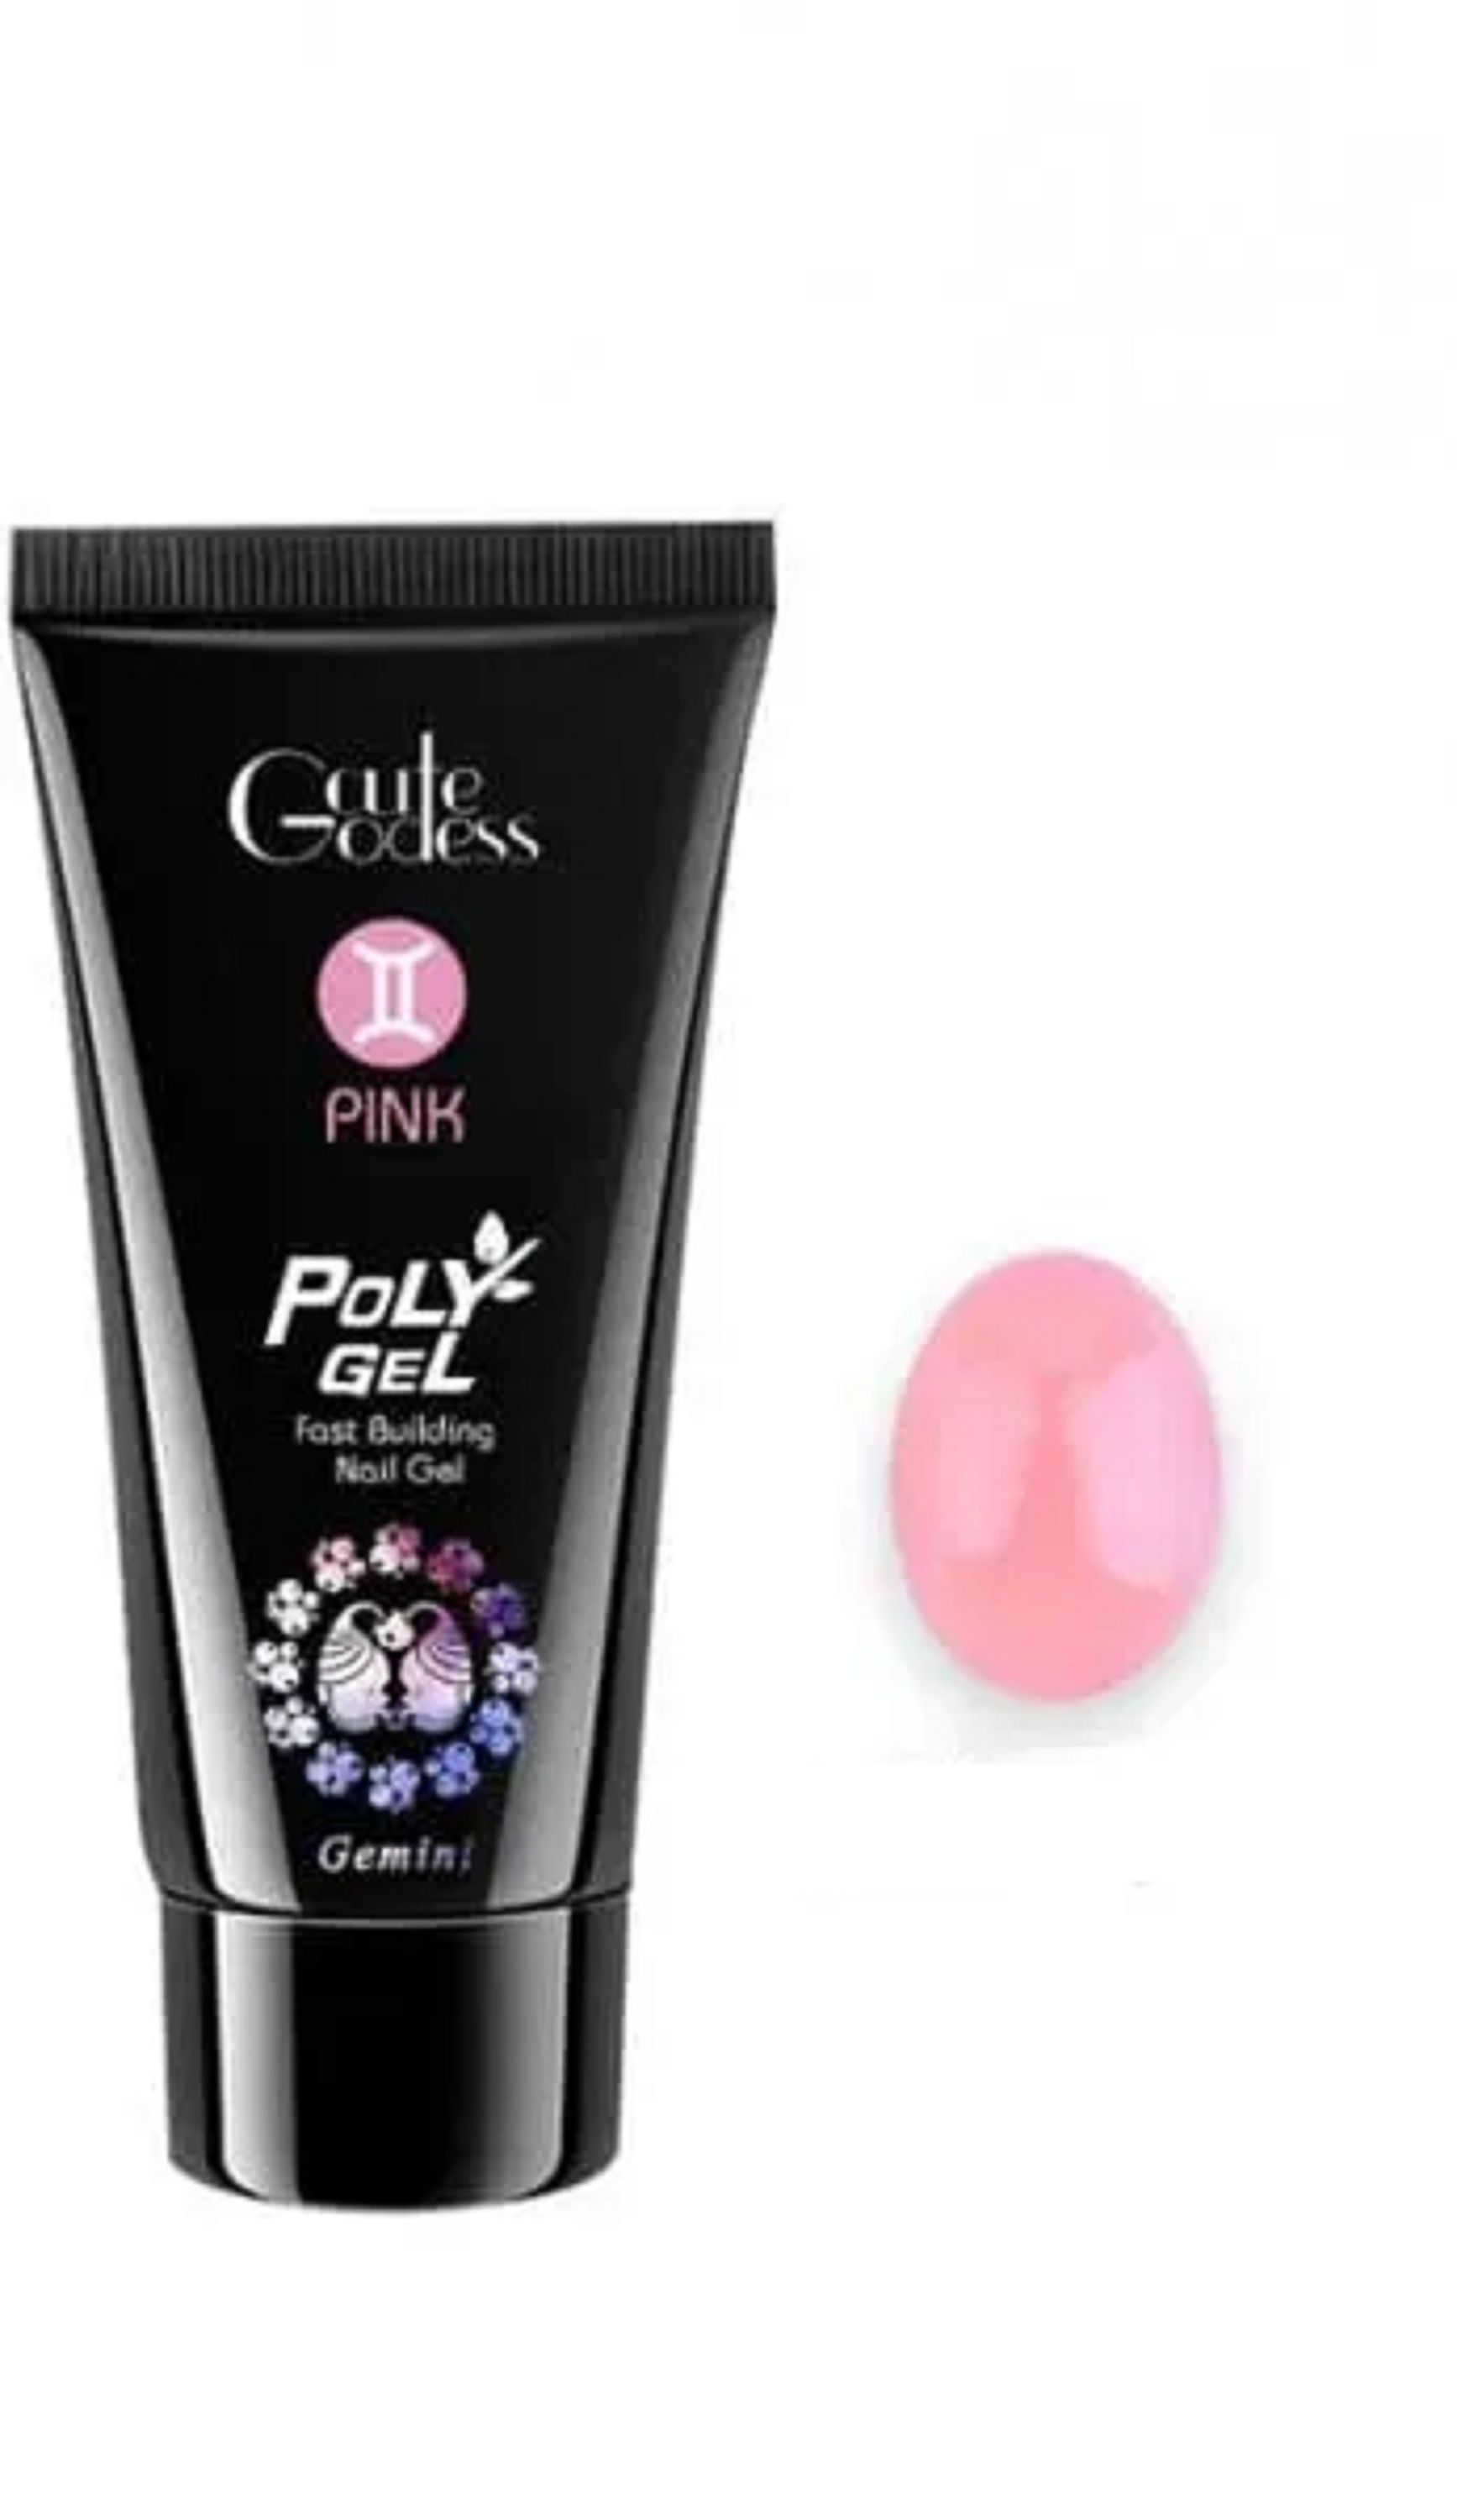 Акригель (полигель) Gcute Godess Pink для моделирования ногтей №9 Pink 30 мл косметичка на молнии бледно розовый